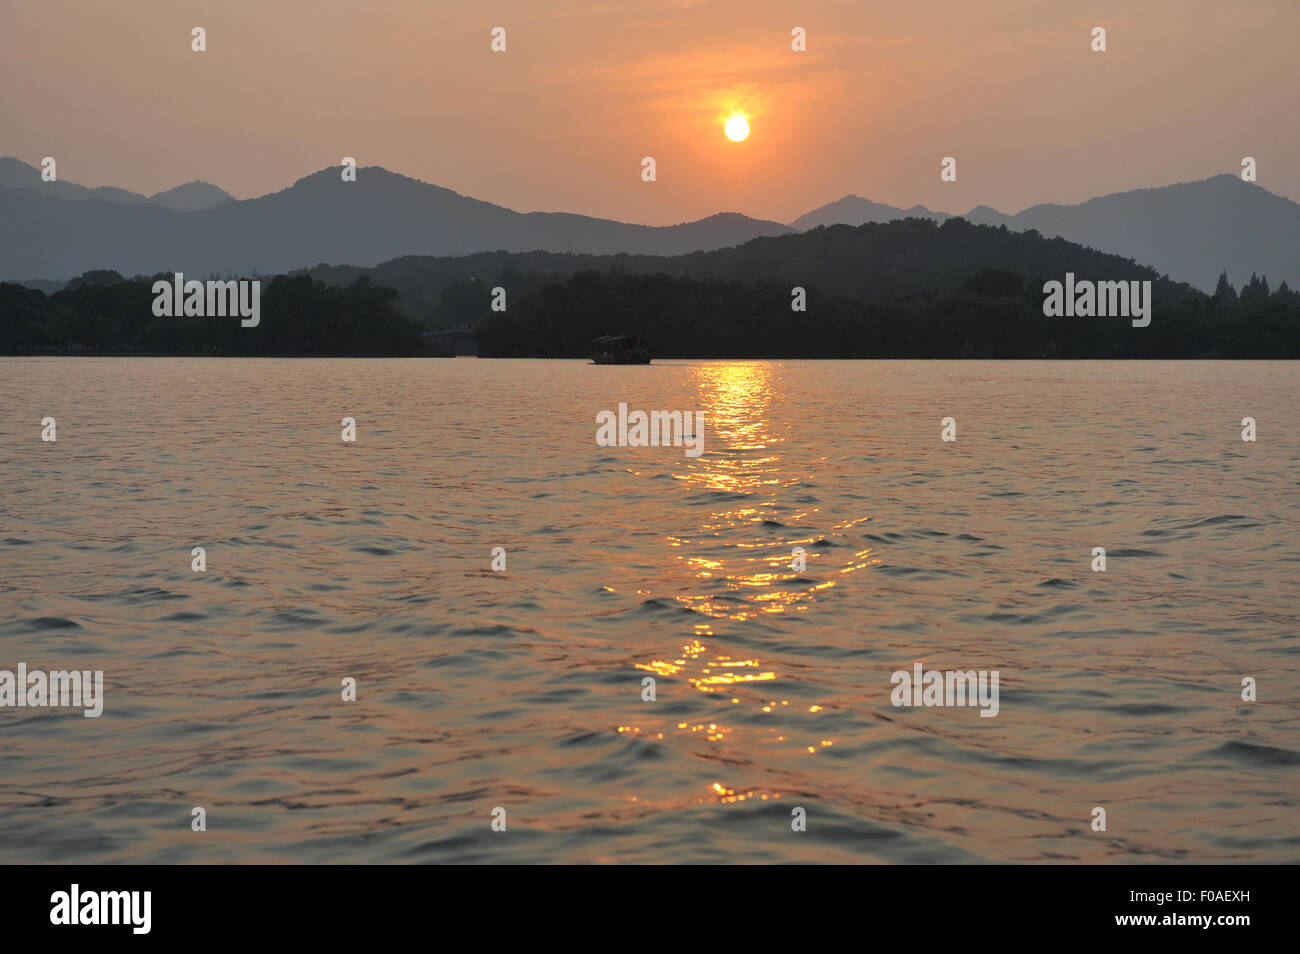 Puesta de sol sobre el lago, las montañas en la distancia, Hangzhou, China Foto de stock